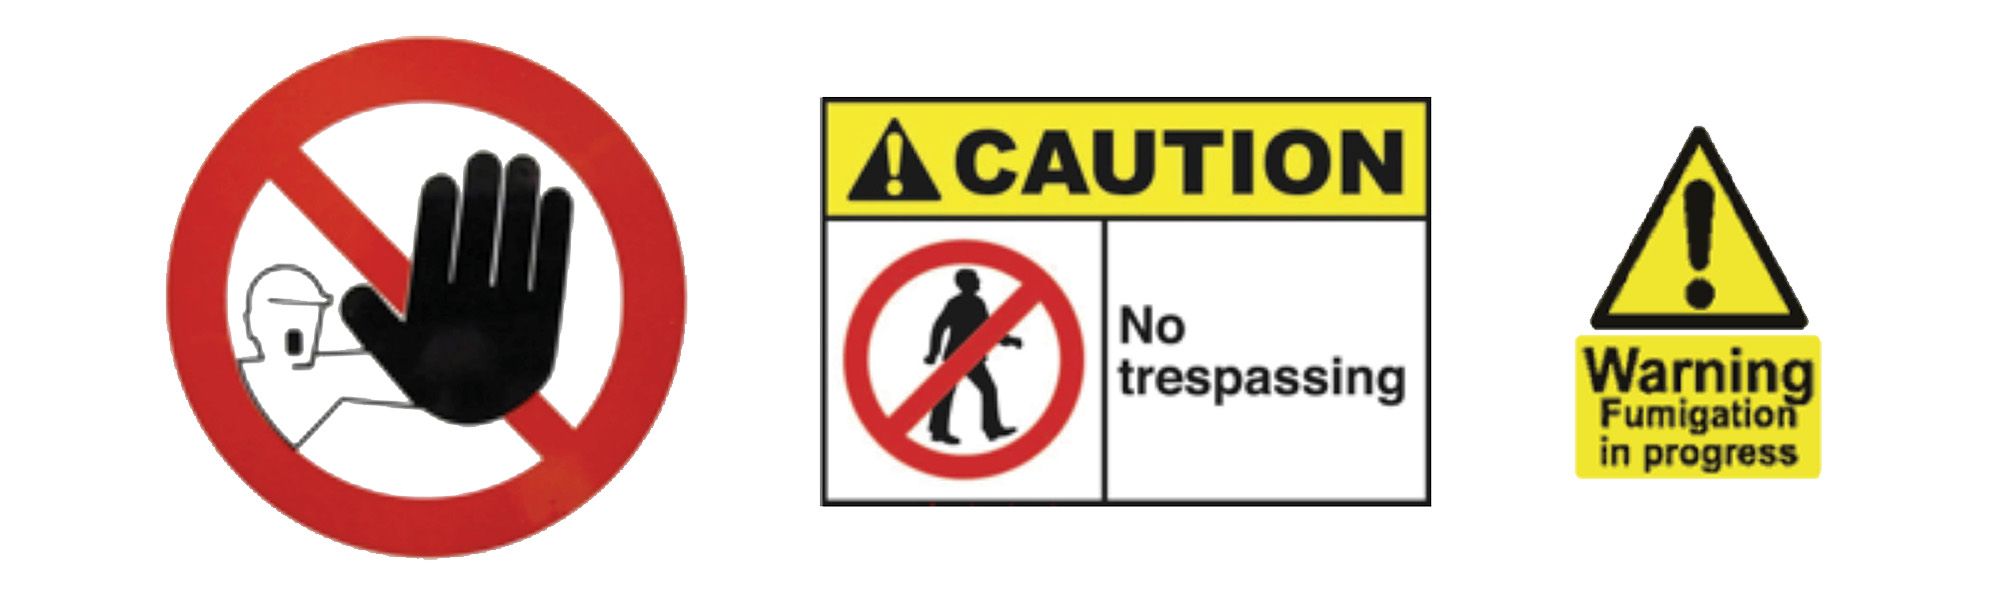 Warning signs image 